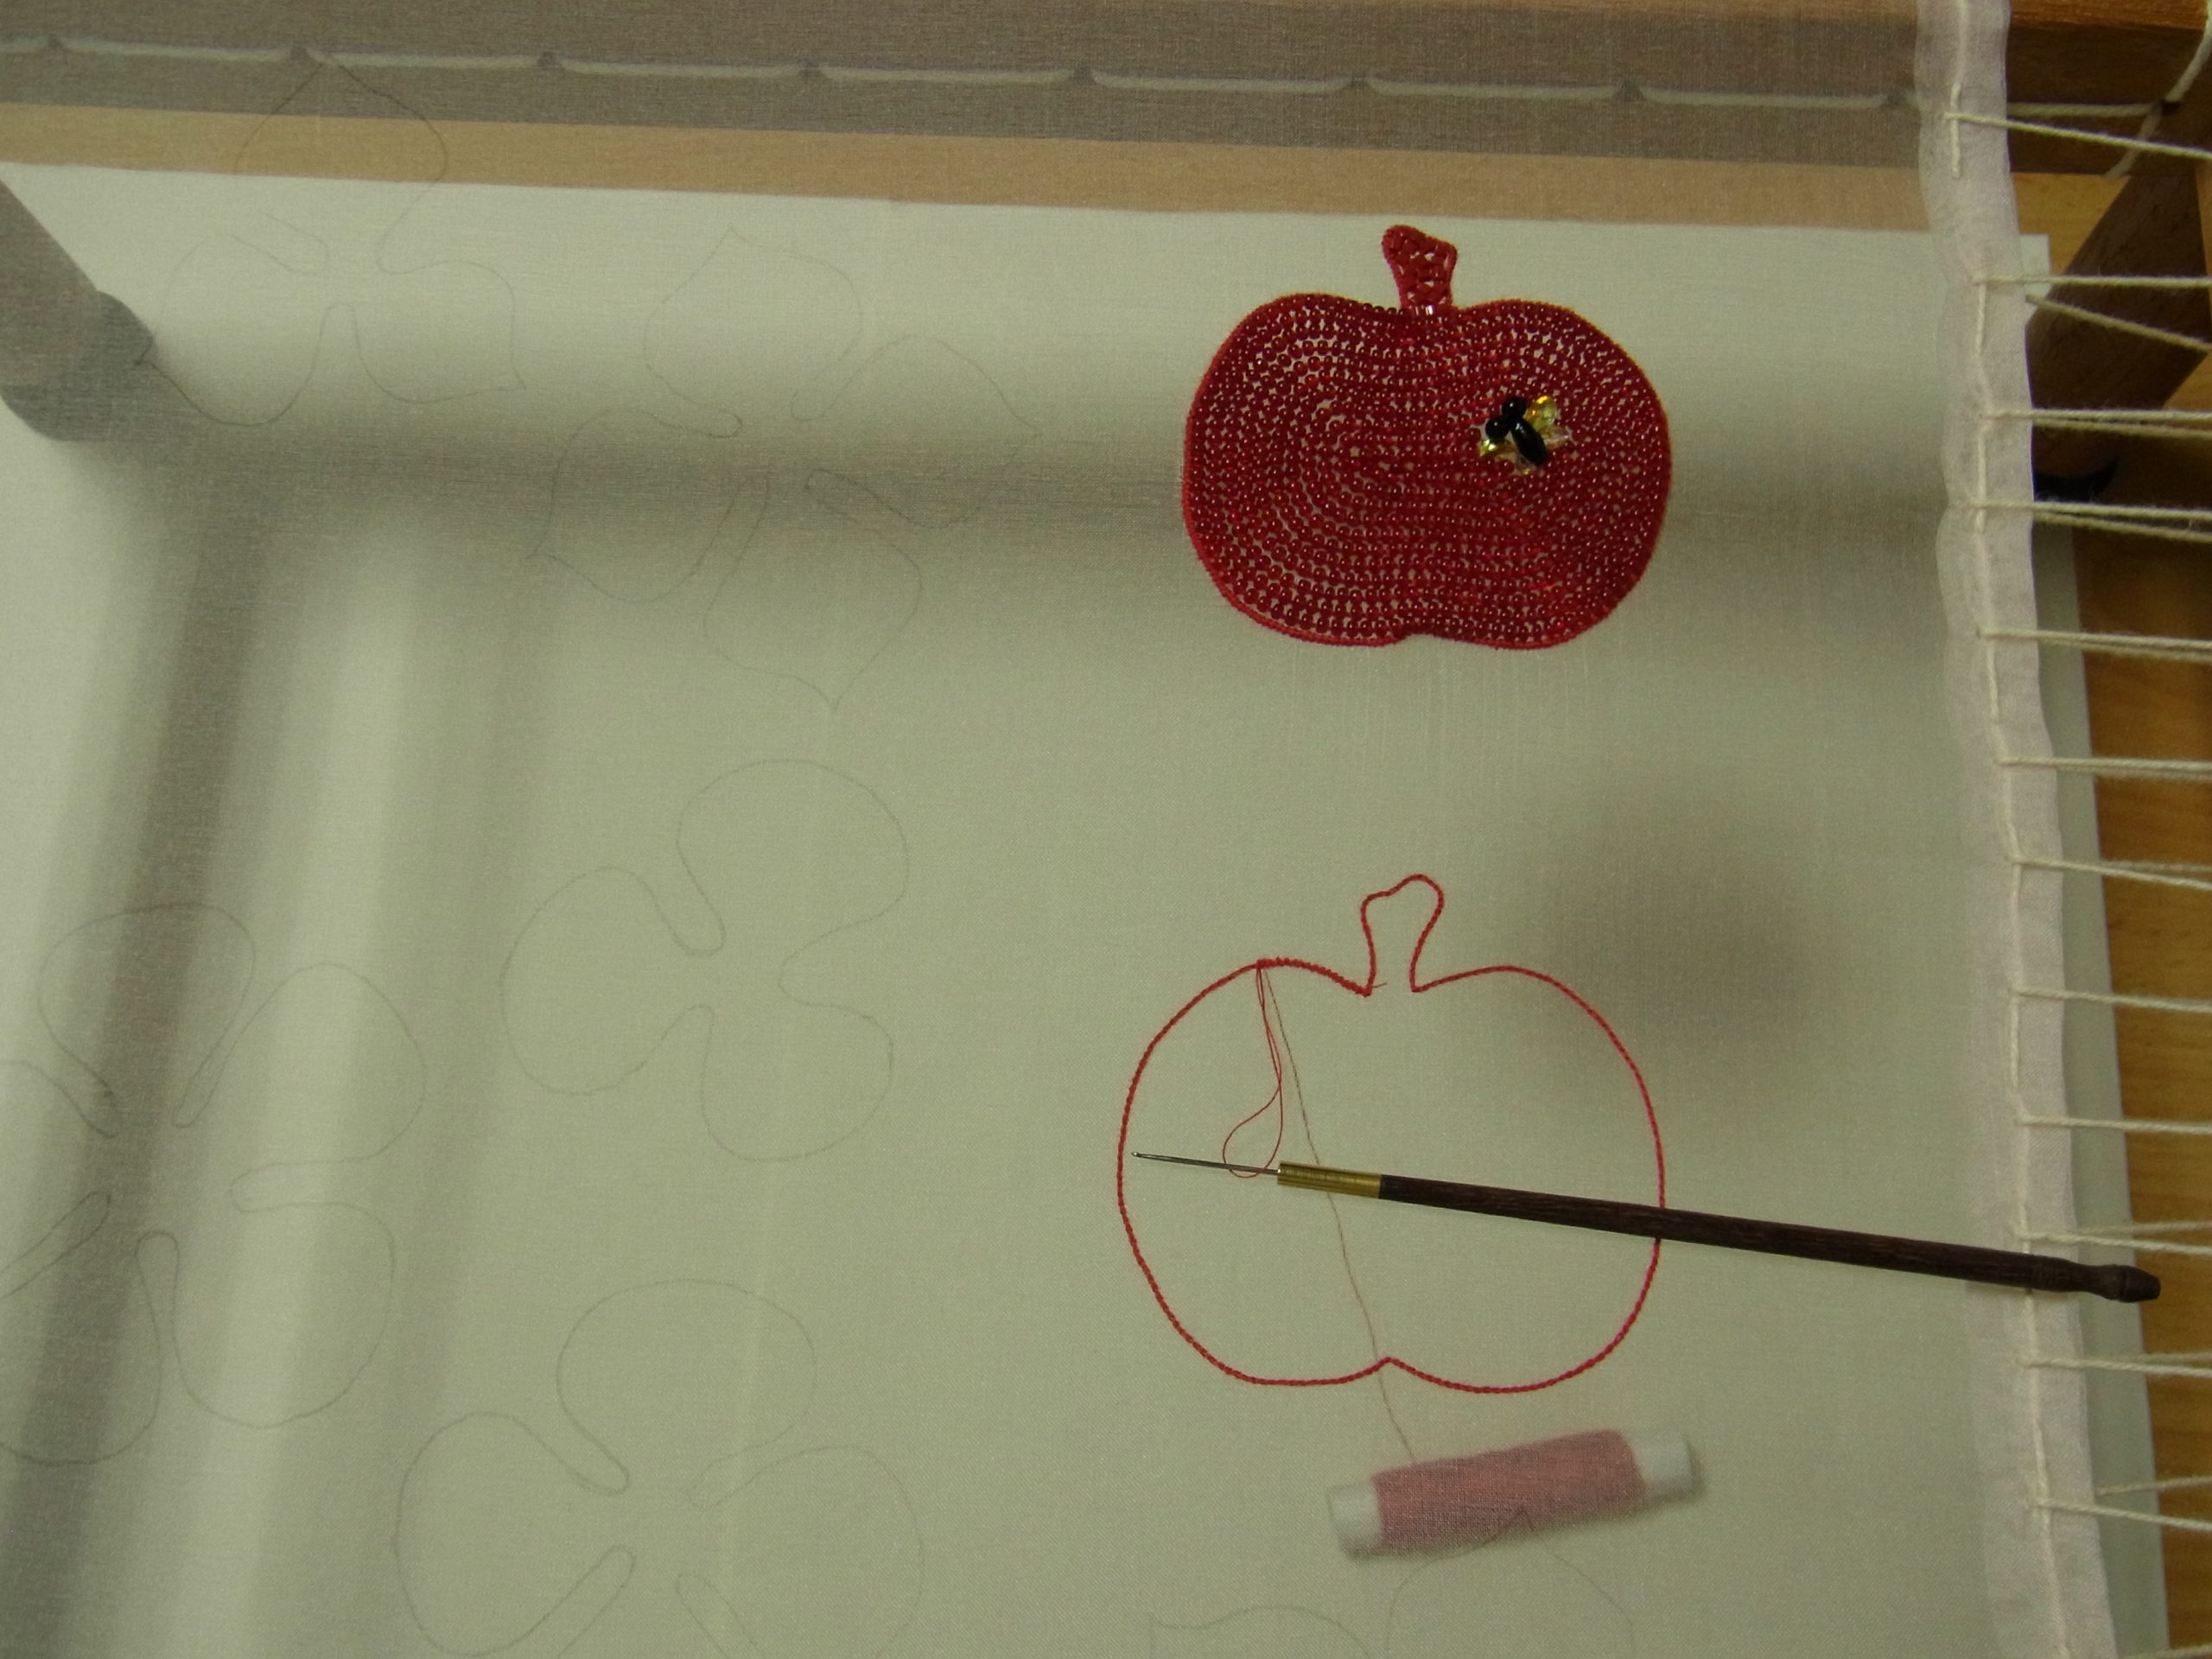 アリワークで、リンゴを赤のビーズで刺し右上に蜂を刺しています。